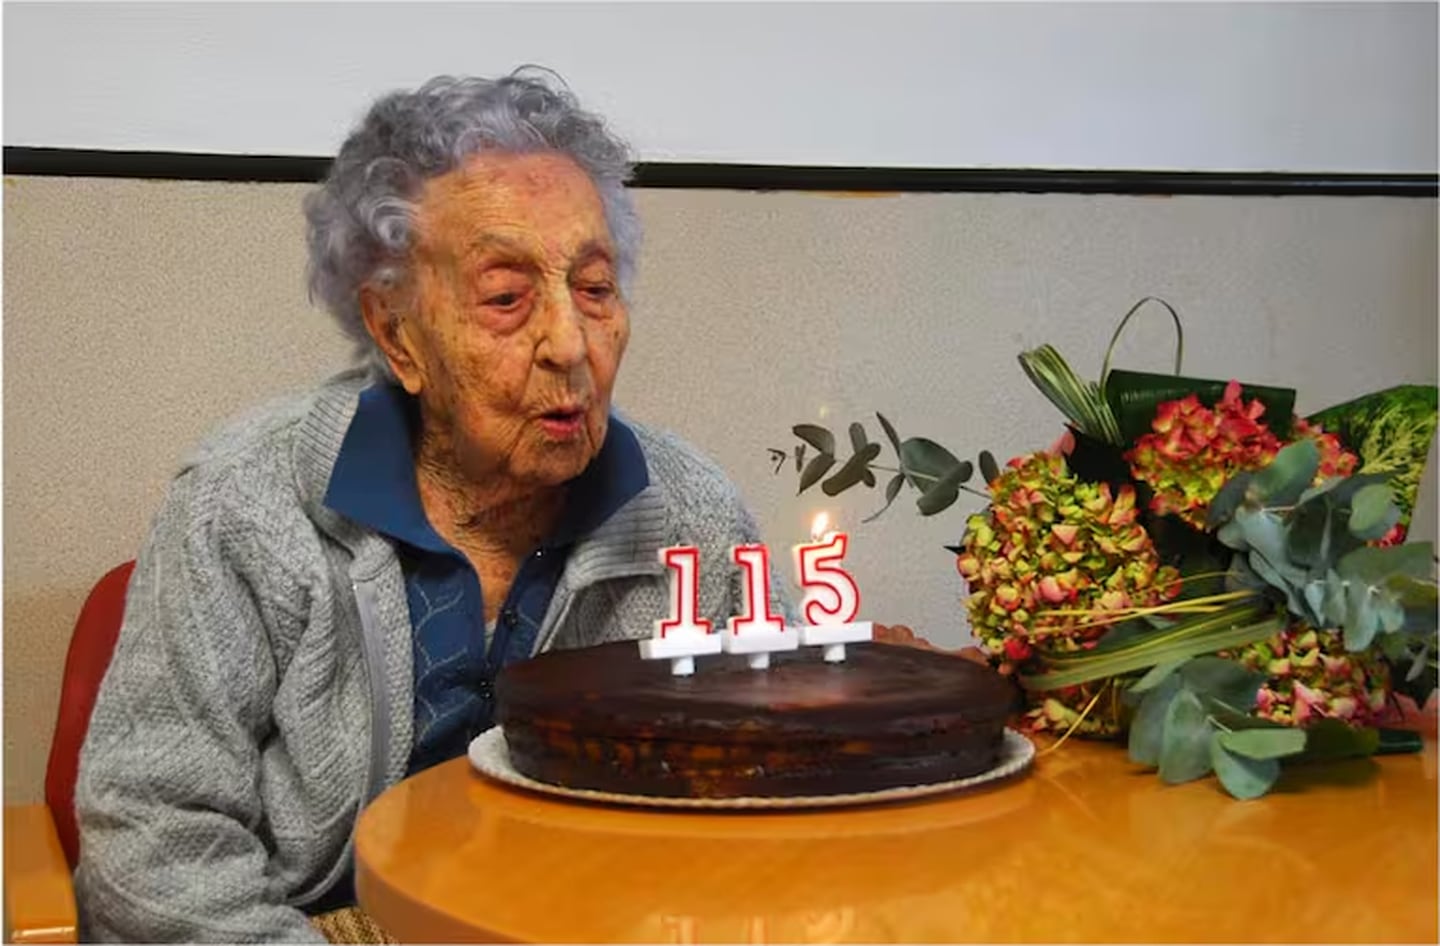 Maria Branyas, la mujer más anciana del mundo, tomada de La Nación de Argentina